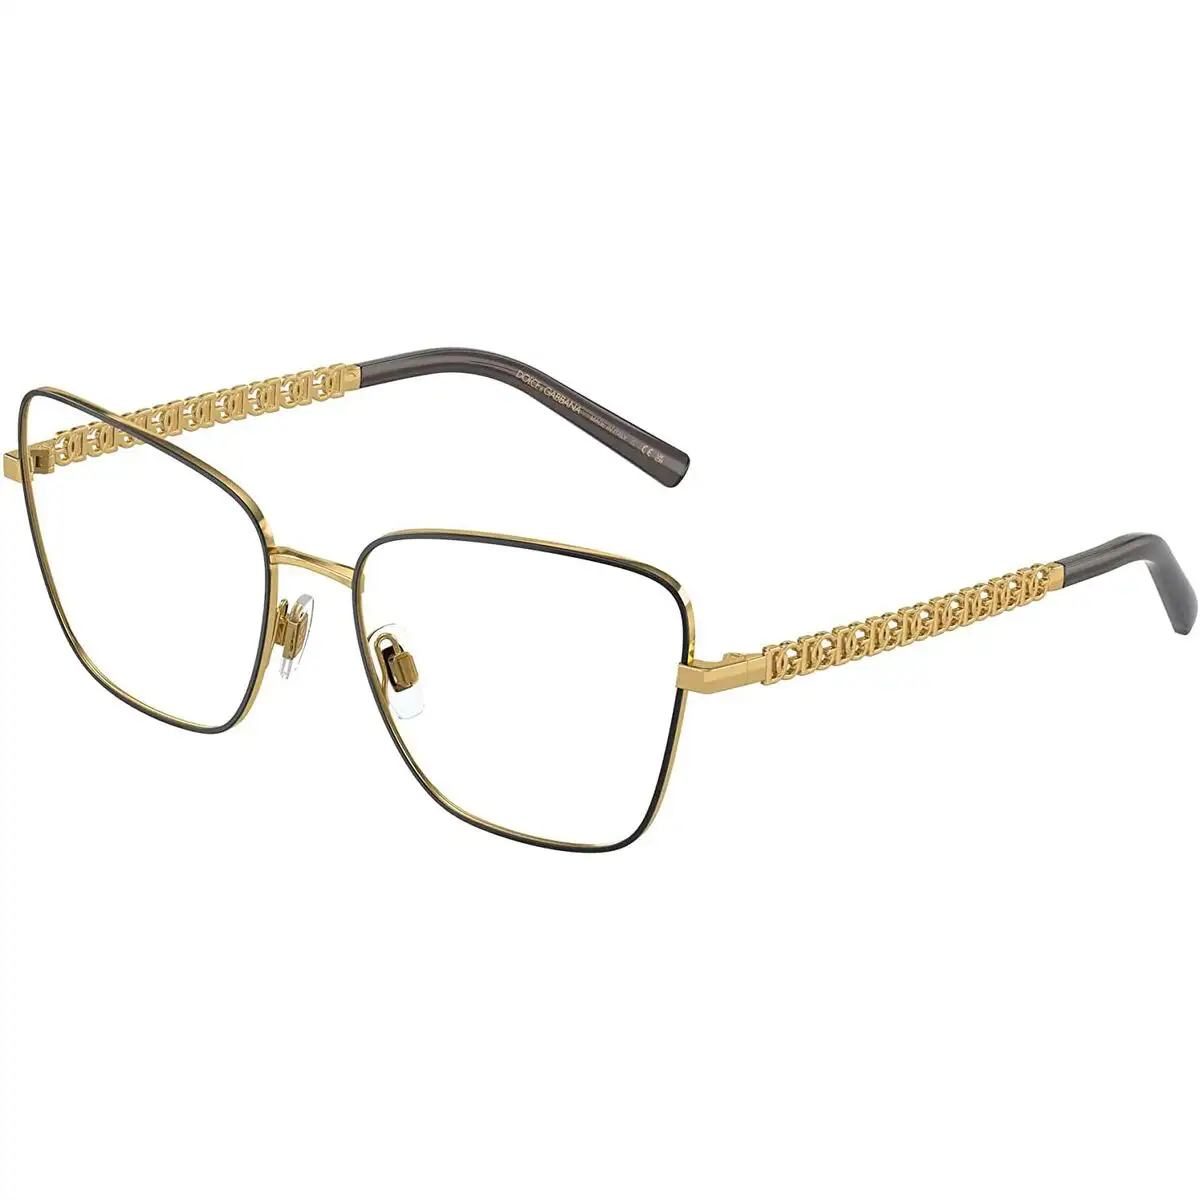 Monture de lunettes femme dolce gabbana dg 1346_8682. DIAYTAR SENEGAL - Votre Portail Vers l'Exclusivité. Explorez notre boutique en ligne pour découvrir des produits uniques et raffinés, conçus pour ceux qui recherchent l'excellence.